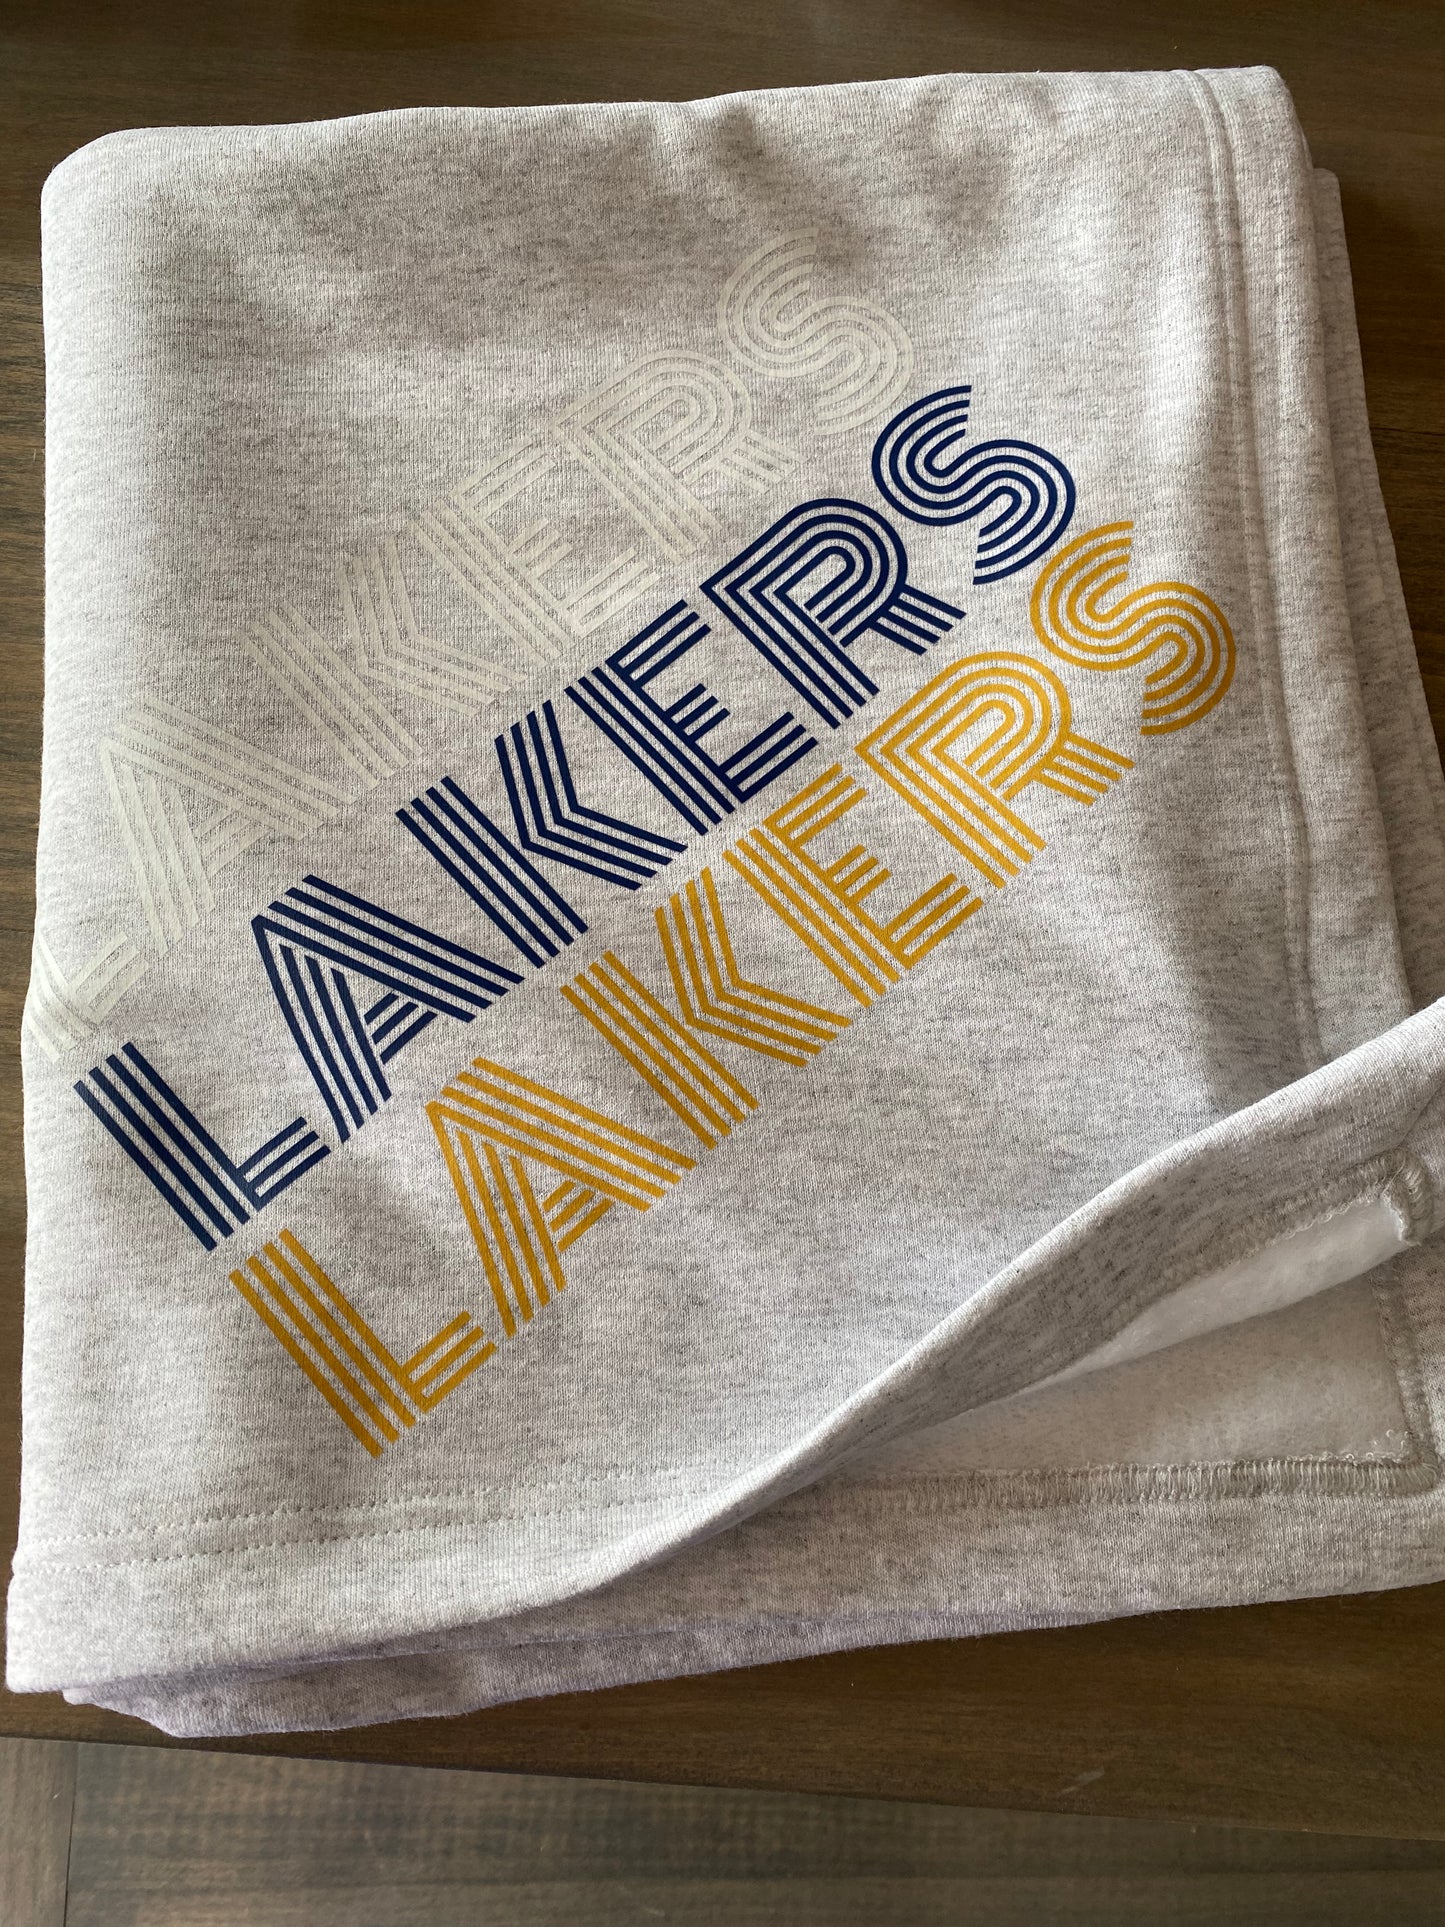 Lakers lakers lakers